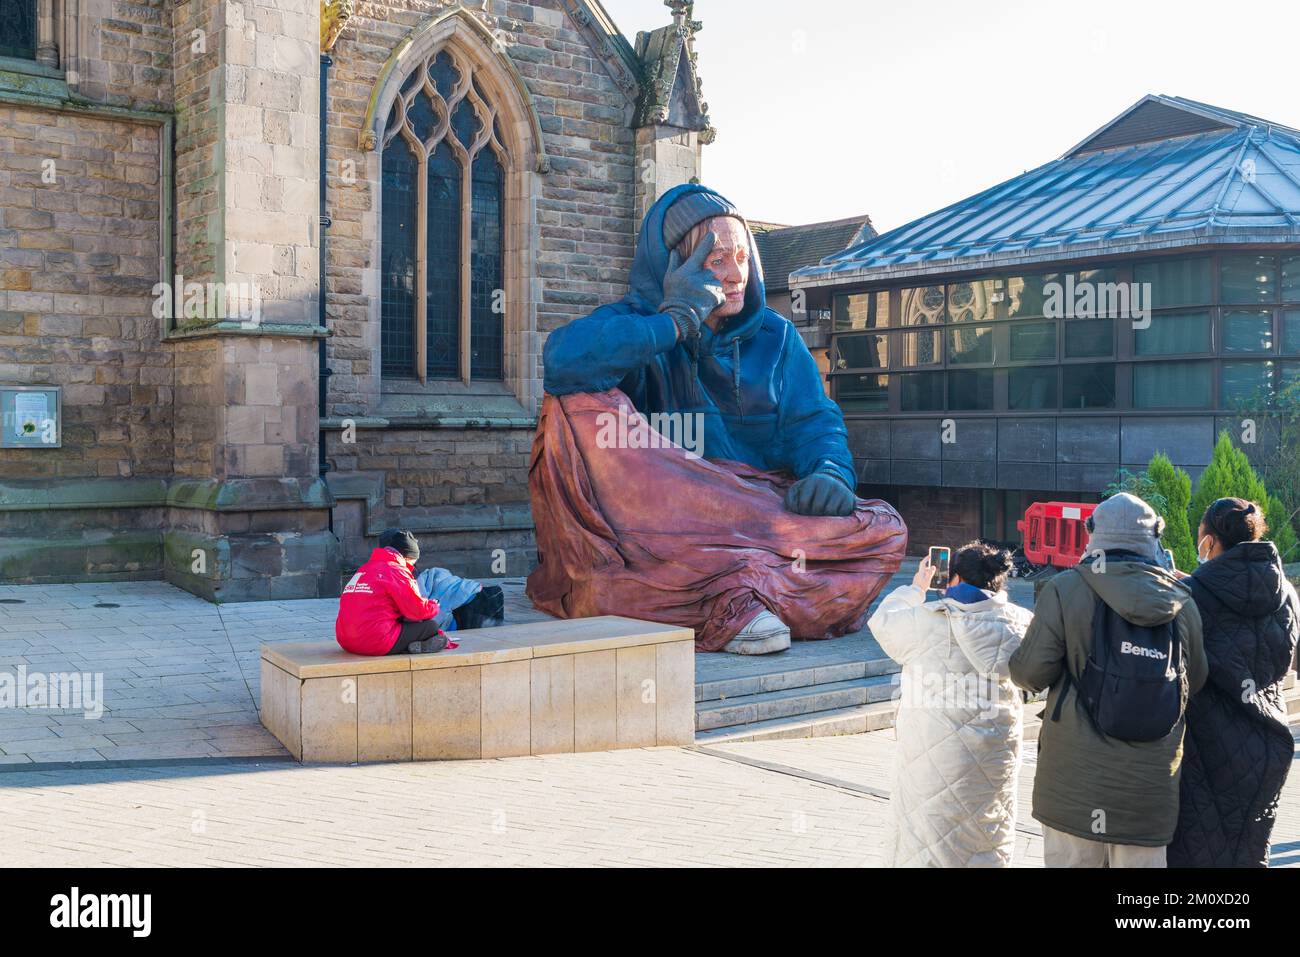 Grande statue de la personne sans abri à l'extérieur de l'église St Martin dans le Bull Ring, Birmingham. Installé par Crisis UK pour promouvoir la sensibilisation au sans-abrisme Banque D'Images